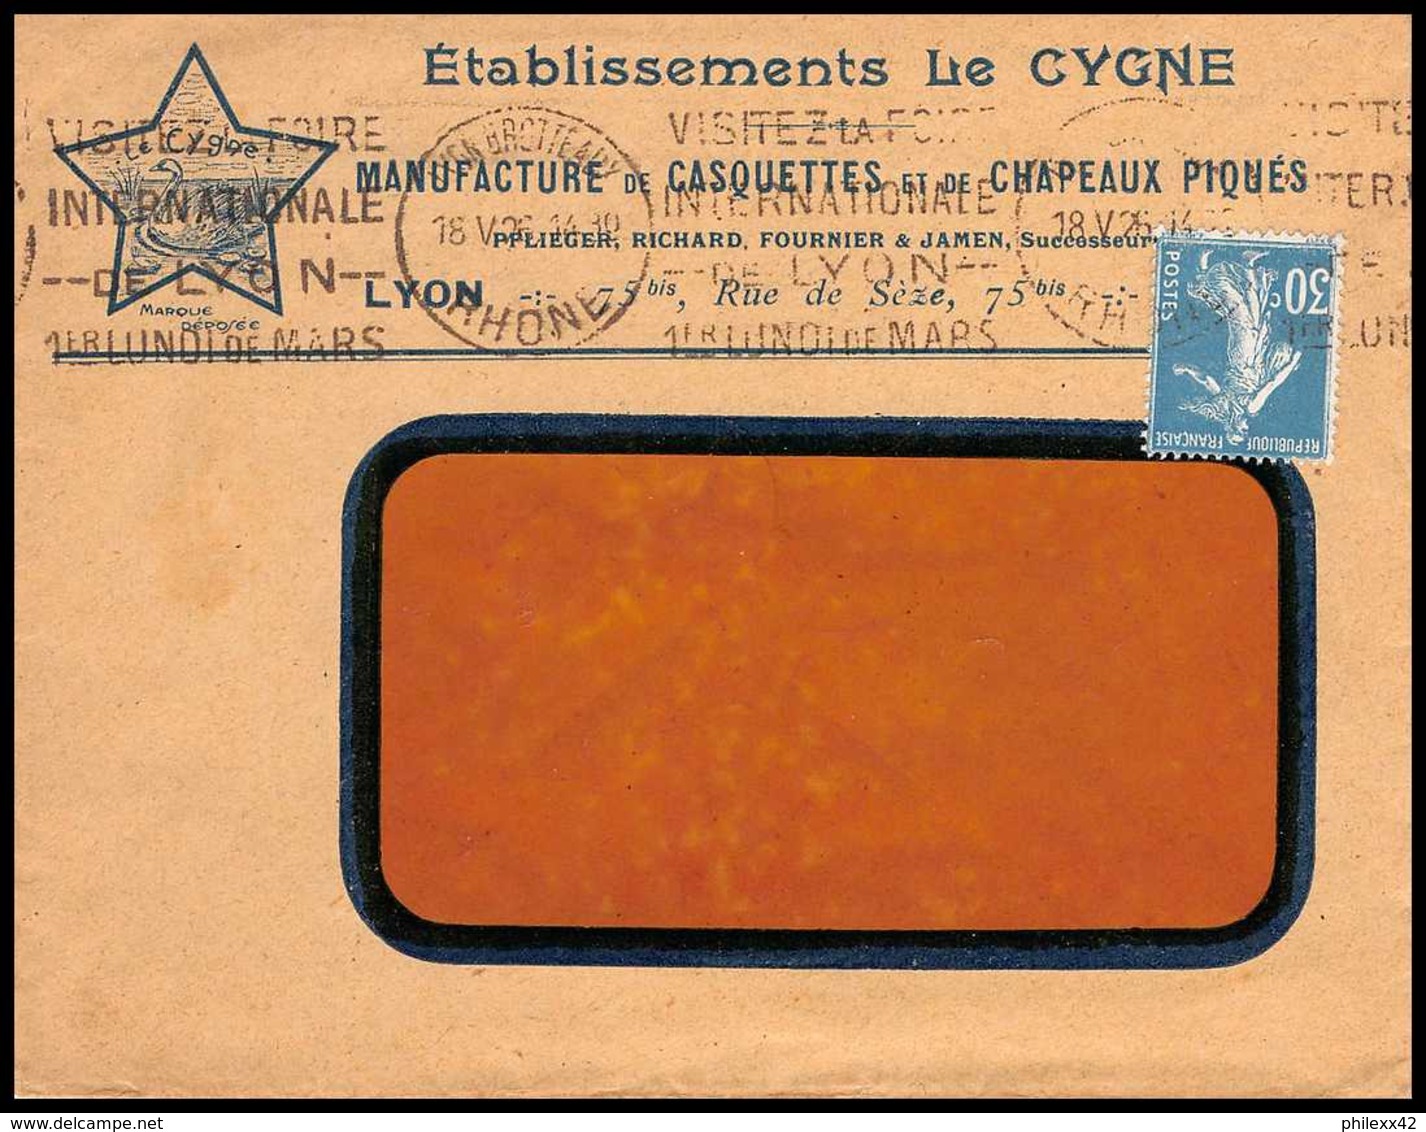 7437 Enveloppe Illustrée Le Cygne Manufacture Chapeaux Casquettes Lyon 1926 Krag Semeuse France Lettre (cover) TB Etat - 1921-1960: Modern Period